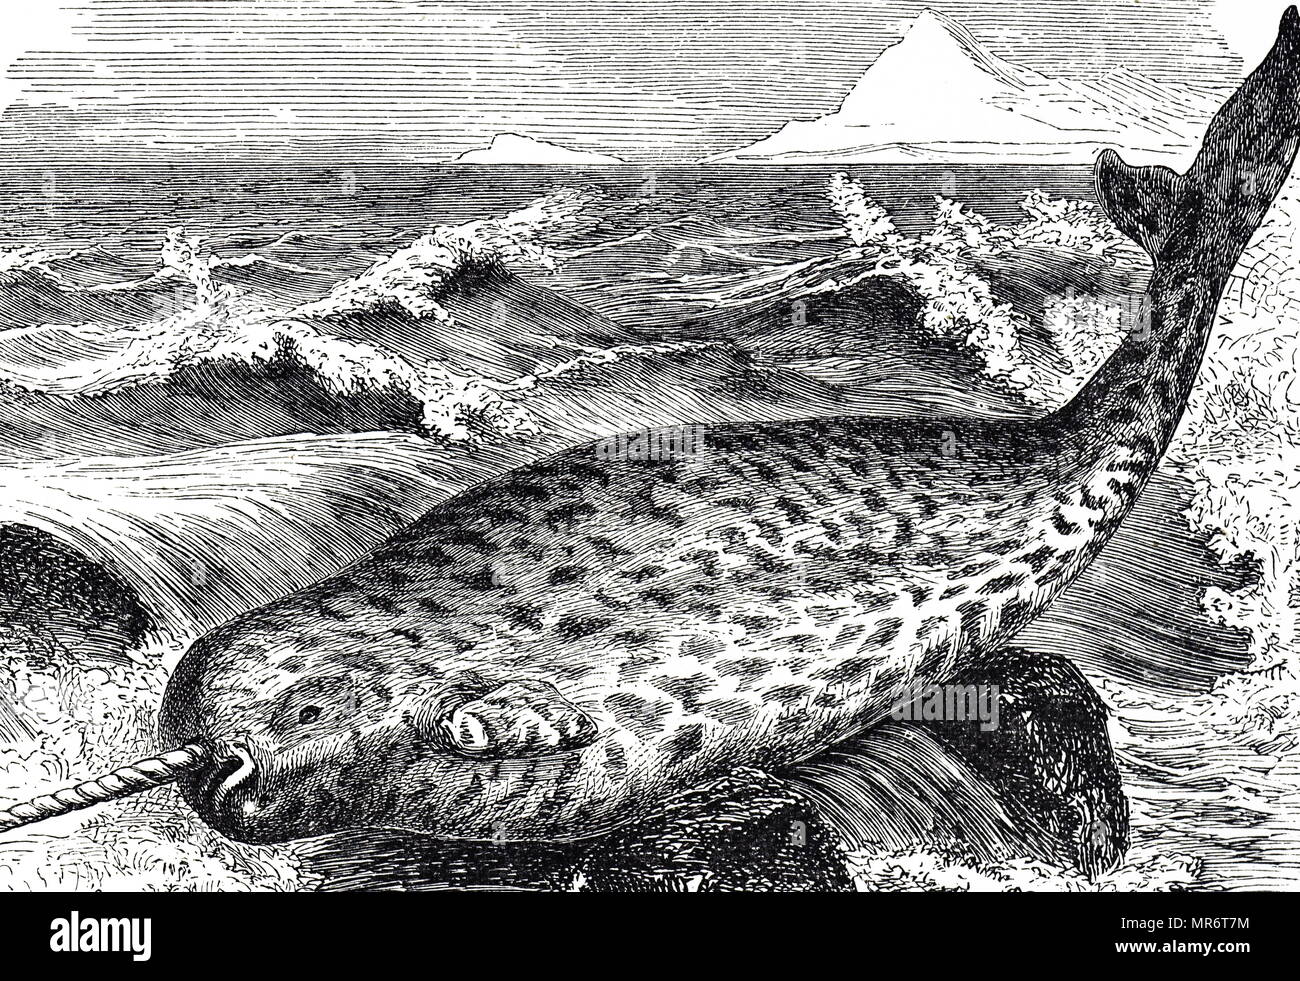 Kupferstich mit der Darstellung eines Narwals, einem mittelgroßen Zahnriemen Wal, besitzt eine große 'Tusk' aus einem Hervorstehenden canine Zahn. Er lebt das ganze Jahr über in arktischen Gewässern rund um Grönland, Kanada und Russland. Vom 19. Jahrhundert Stockfoto